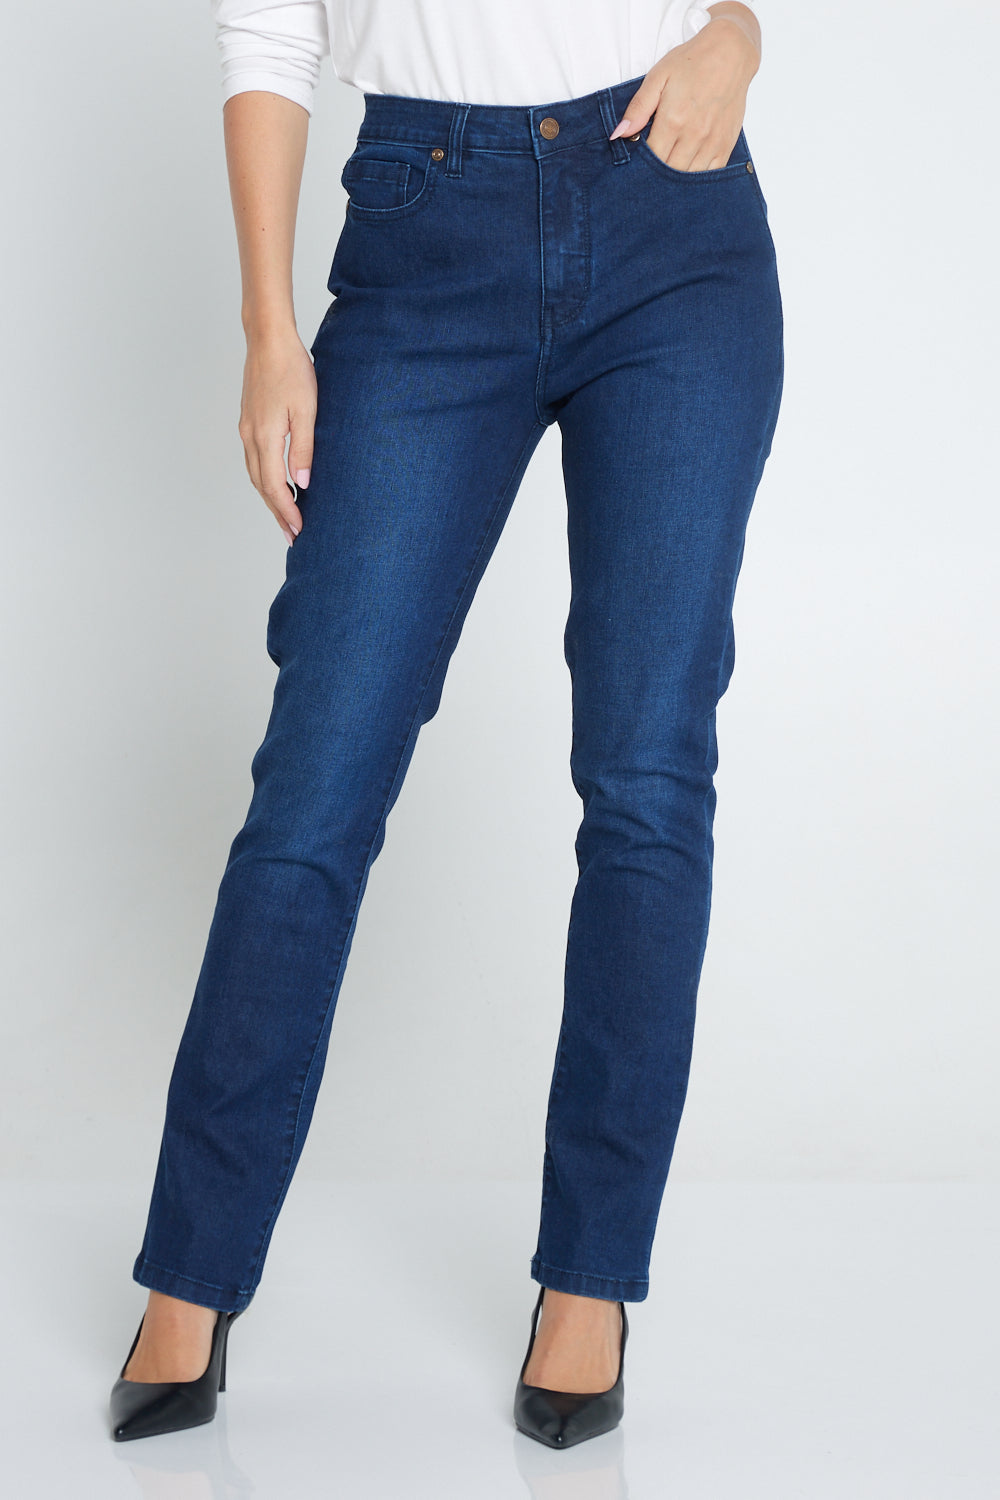 Orientique Straight Leg Jeans - Dark Denim